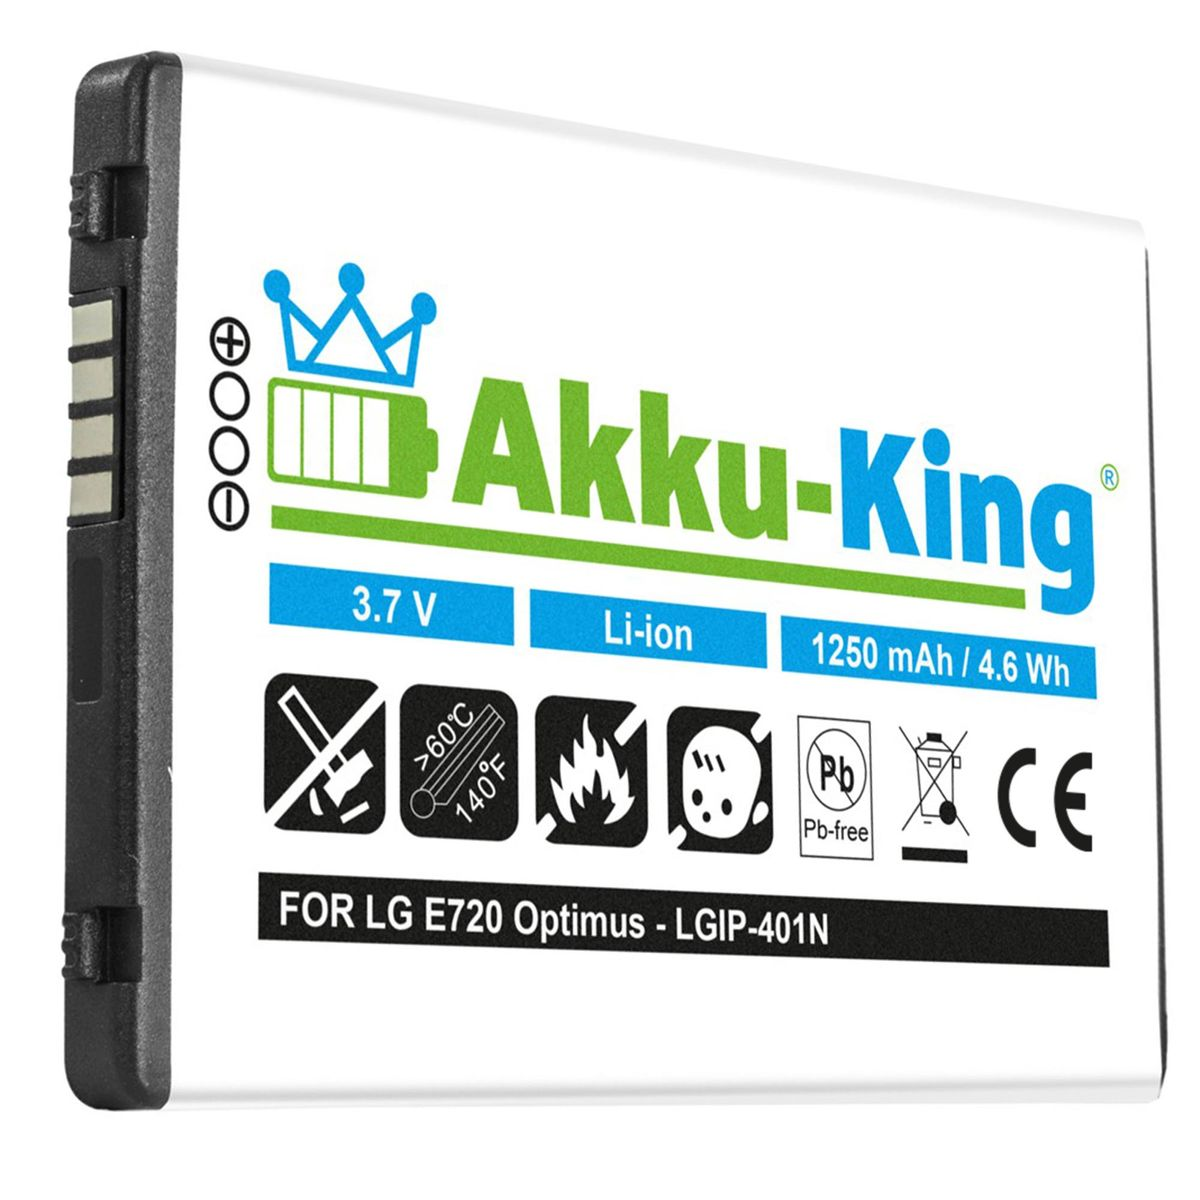 mit 3.7 Li-Ion LG Volt, Handy-Akku, AKKU-KING Akku LGIP-401N kompatibel 1250mAh